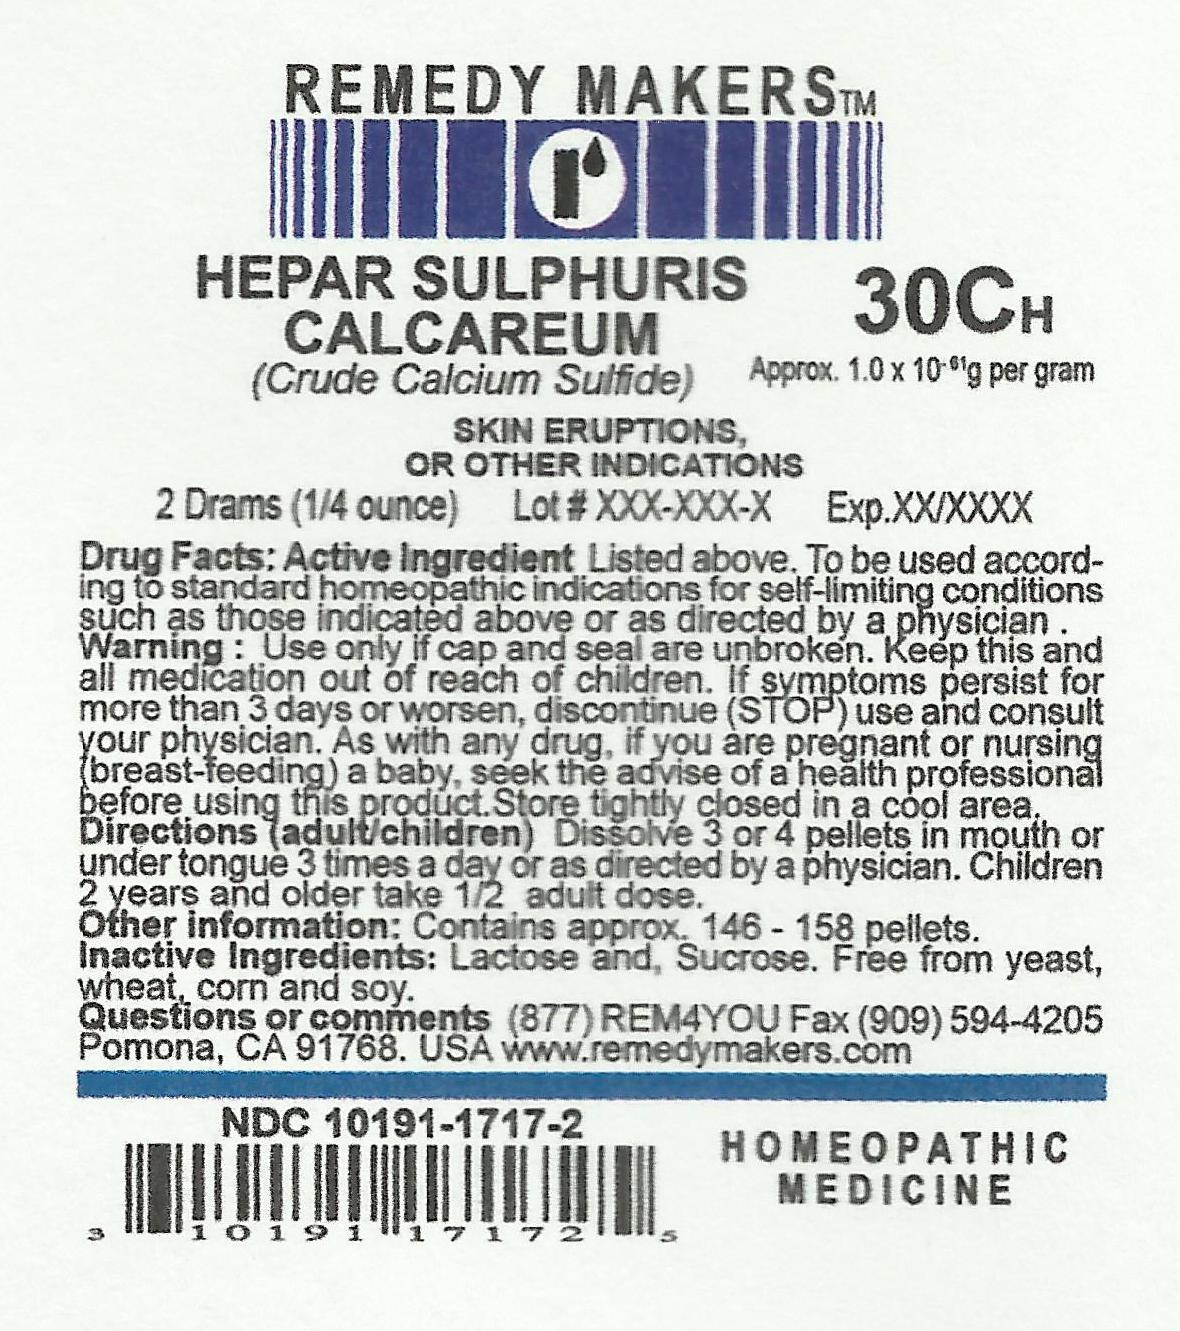 HEPARSULPHURISCALCAREUM30C